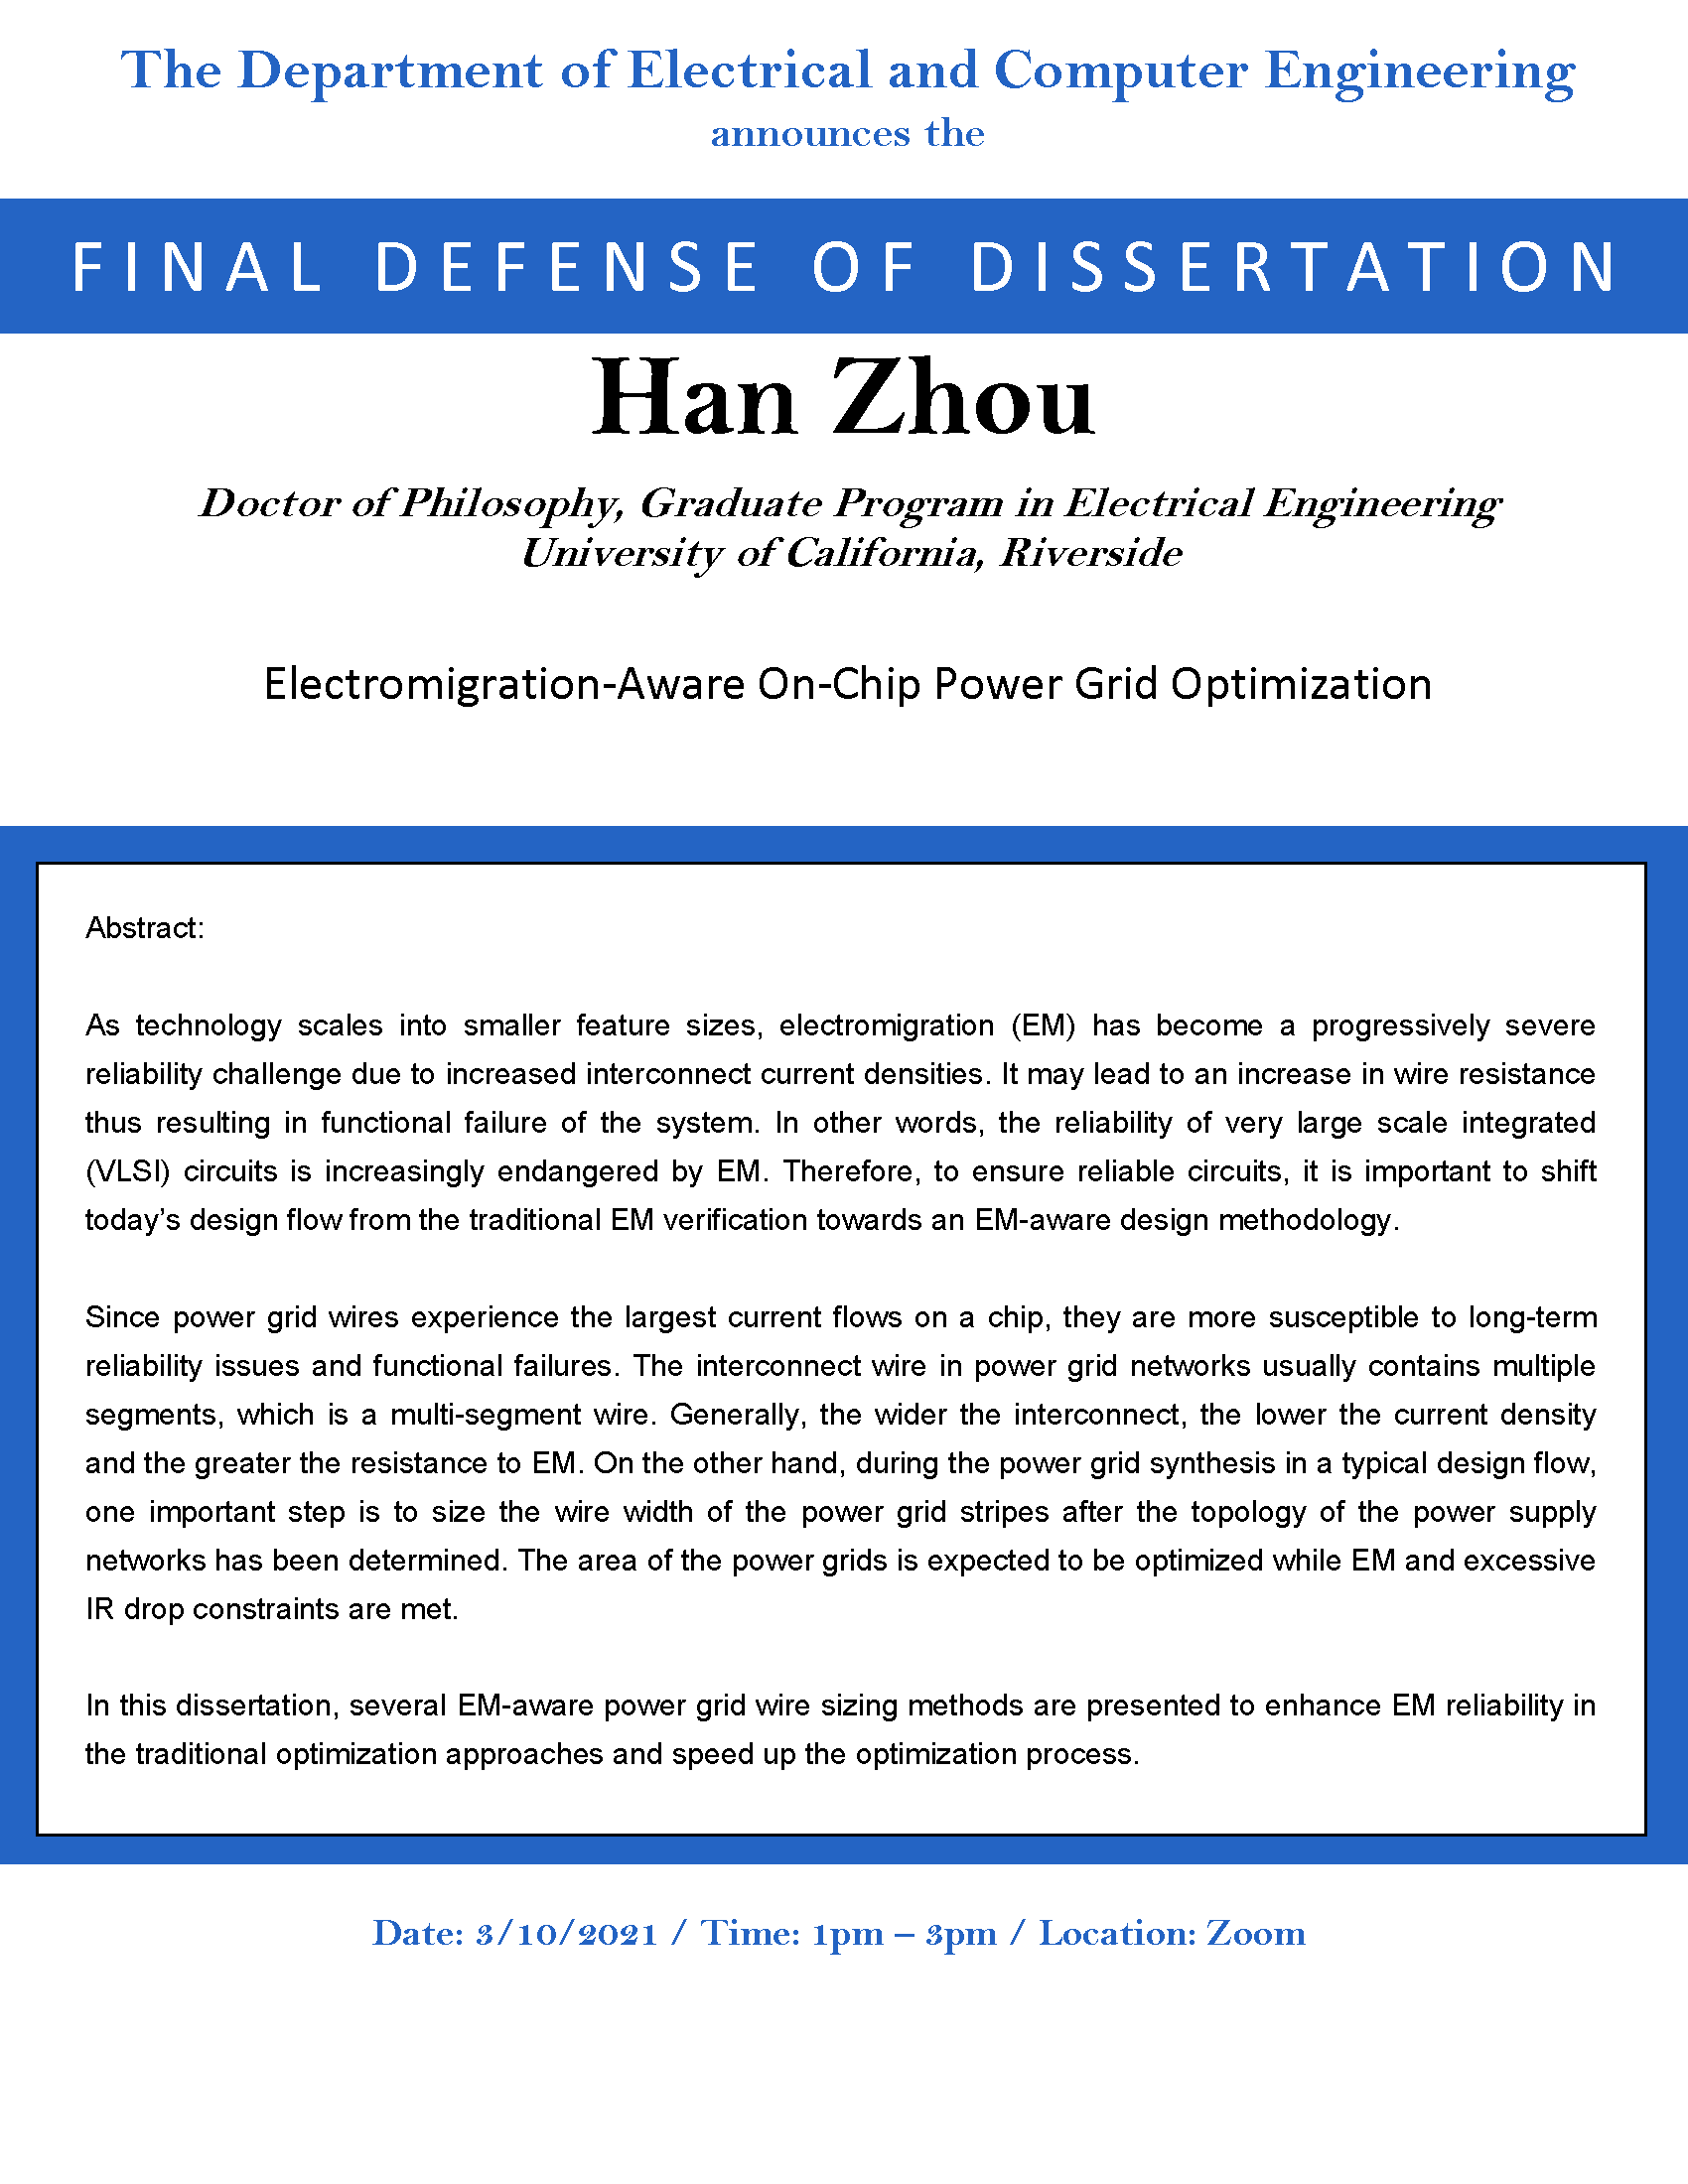 Final Defense of Dissertation: Han Zhou